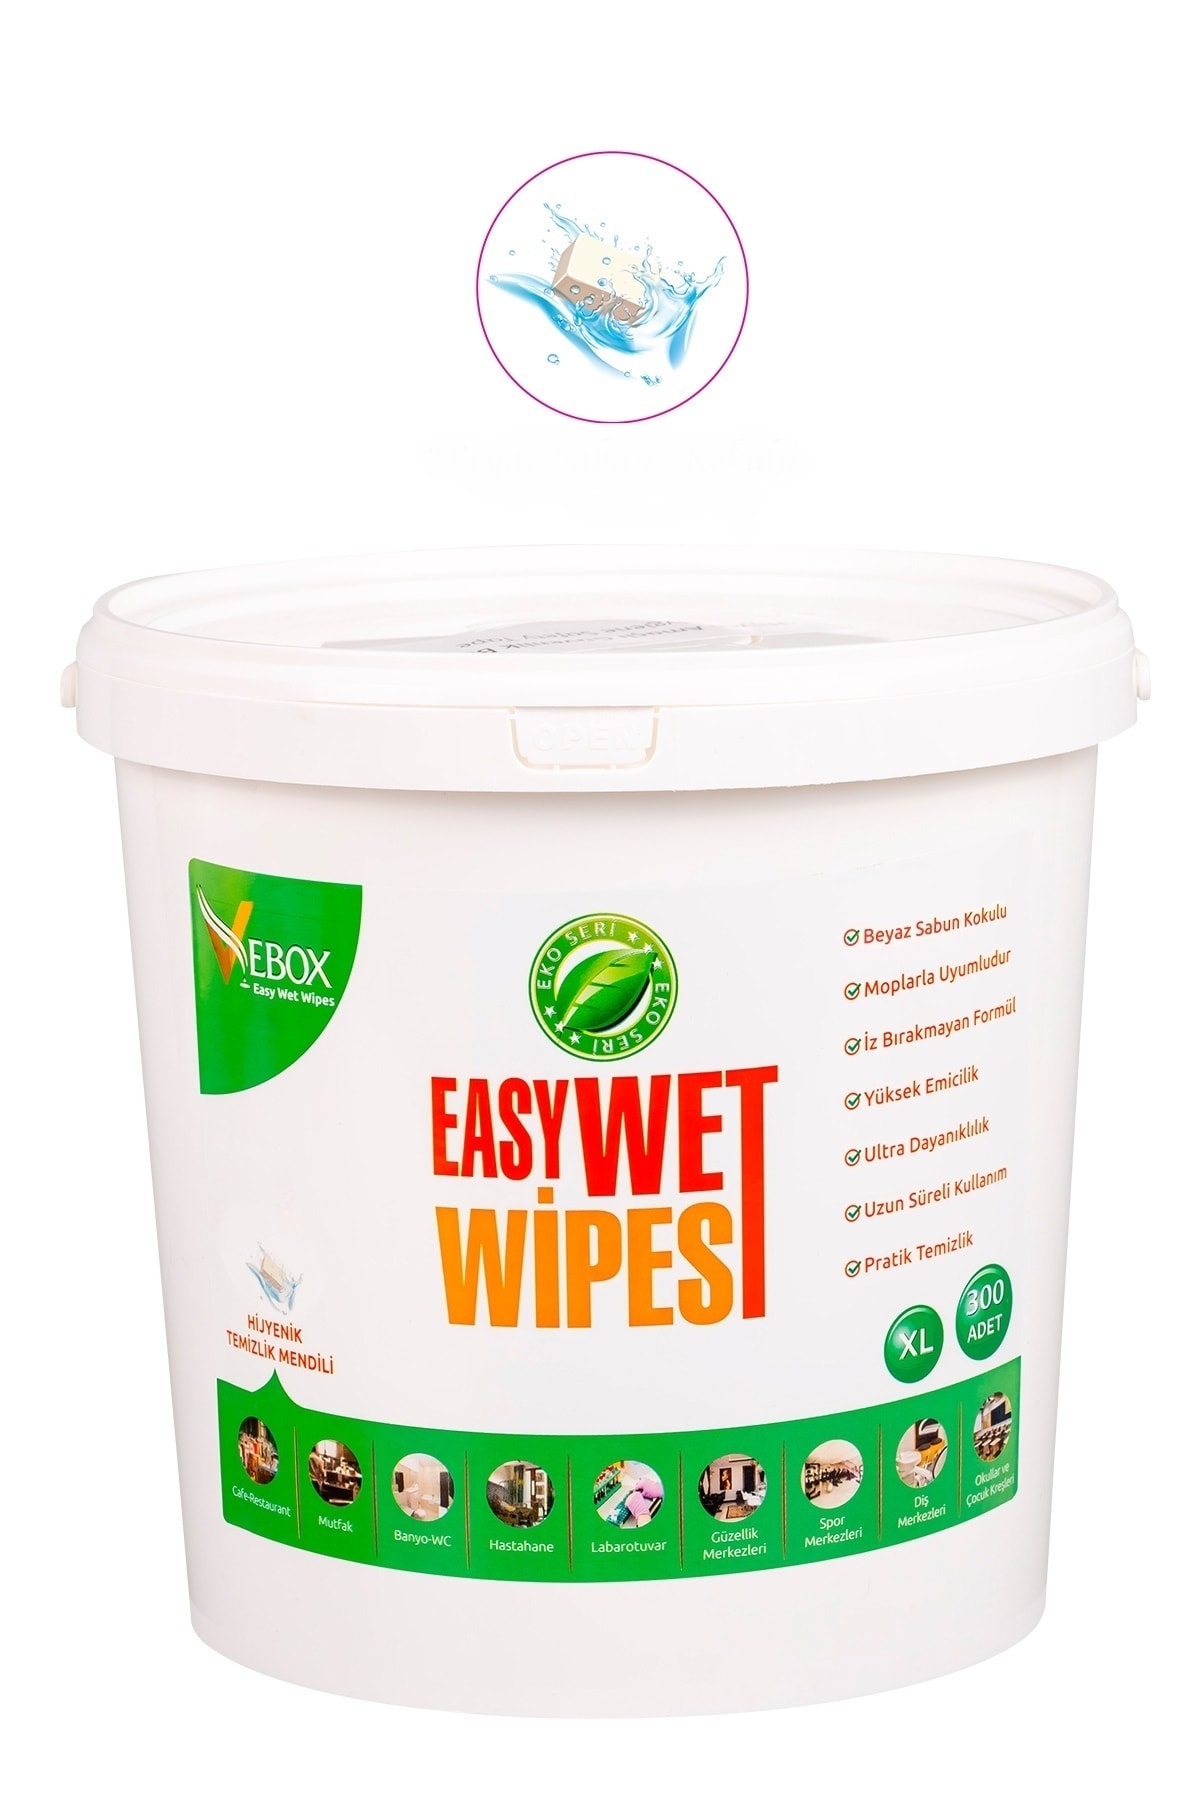 VEBOX Easy Wet Wipes Kova Islak Mendil Beyaz Sabun Kokulu Eko Seri 300'lü